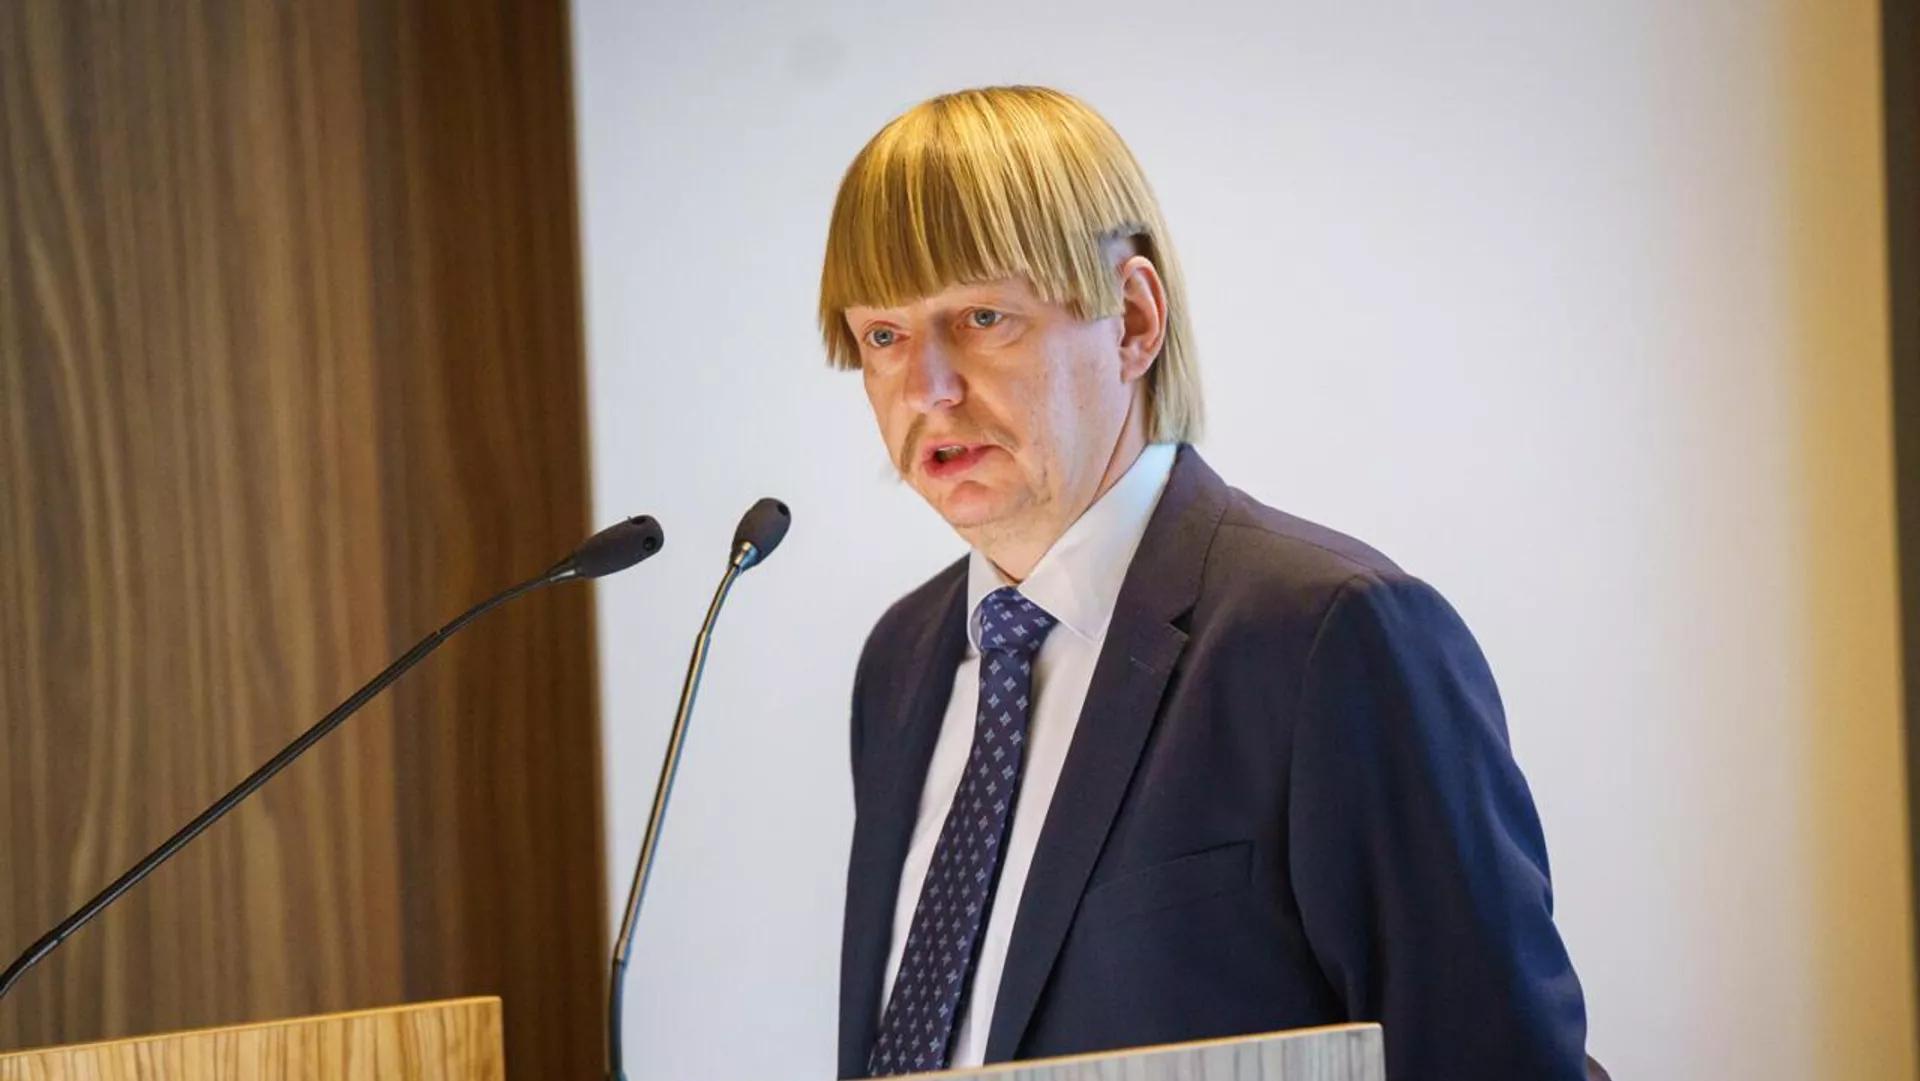 Новая политическая фигура из Эстонии, чьи волосы затмили прическу Бориса Джонсона и Дональда Трампа: Рейн Эплер